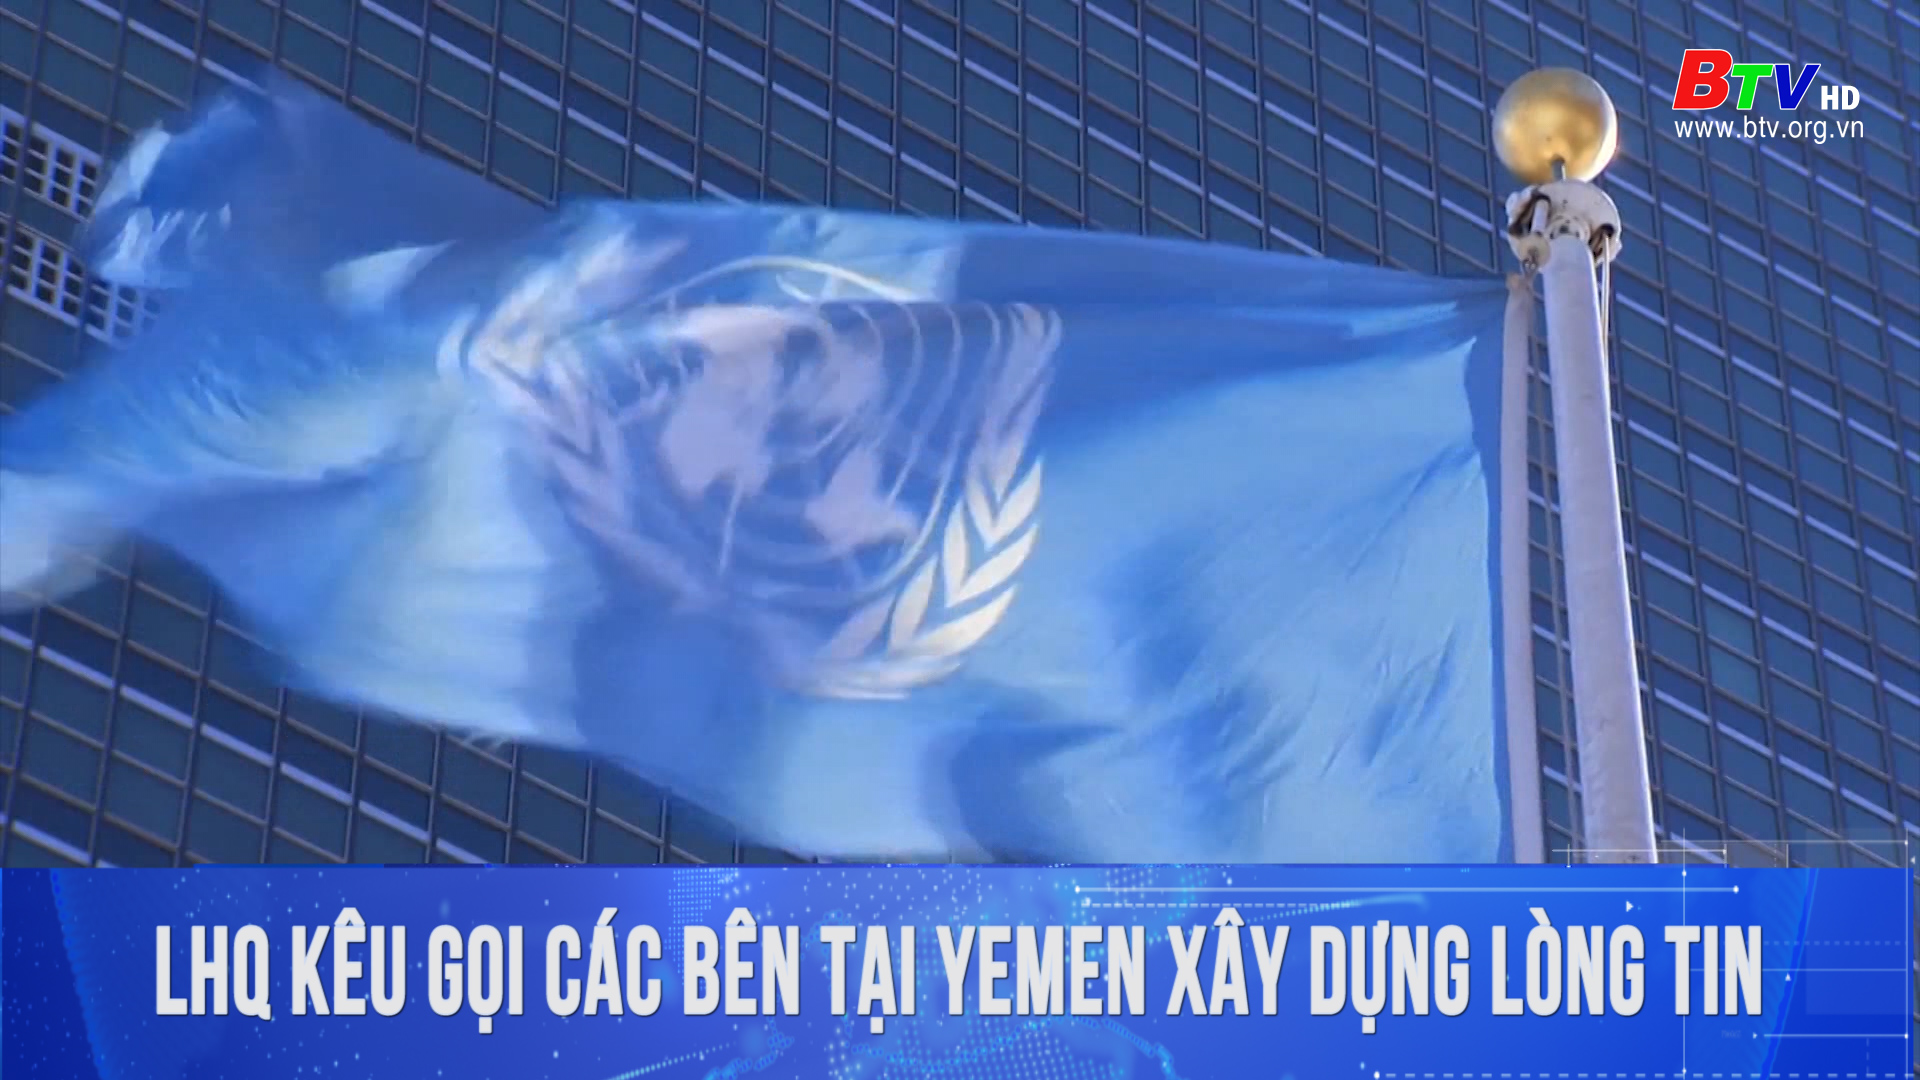 Liên Hợp Quốc kêu gọi các bên tại Yemen xây dựng lòng tin